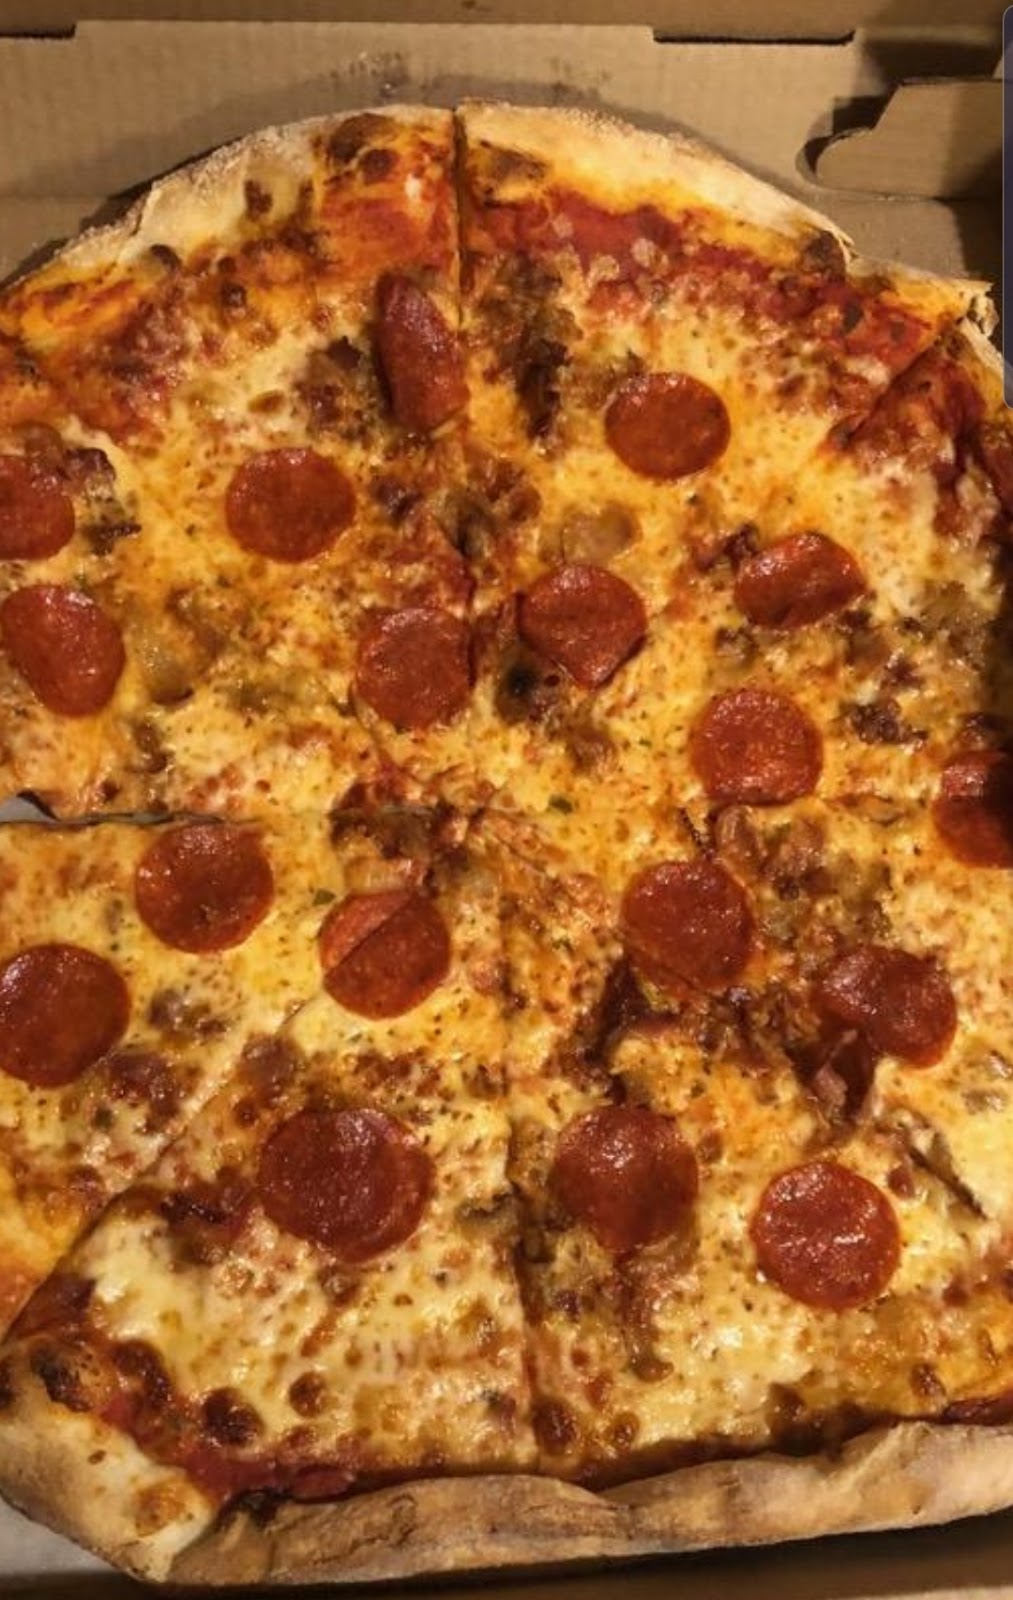 La Vita Mia Pizza and Panini & Italian Specialties Market | 1281 Arthur Kill Rd, Staten Island, NY 10312 | Phone: (347) 215-2210